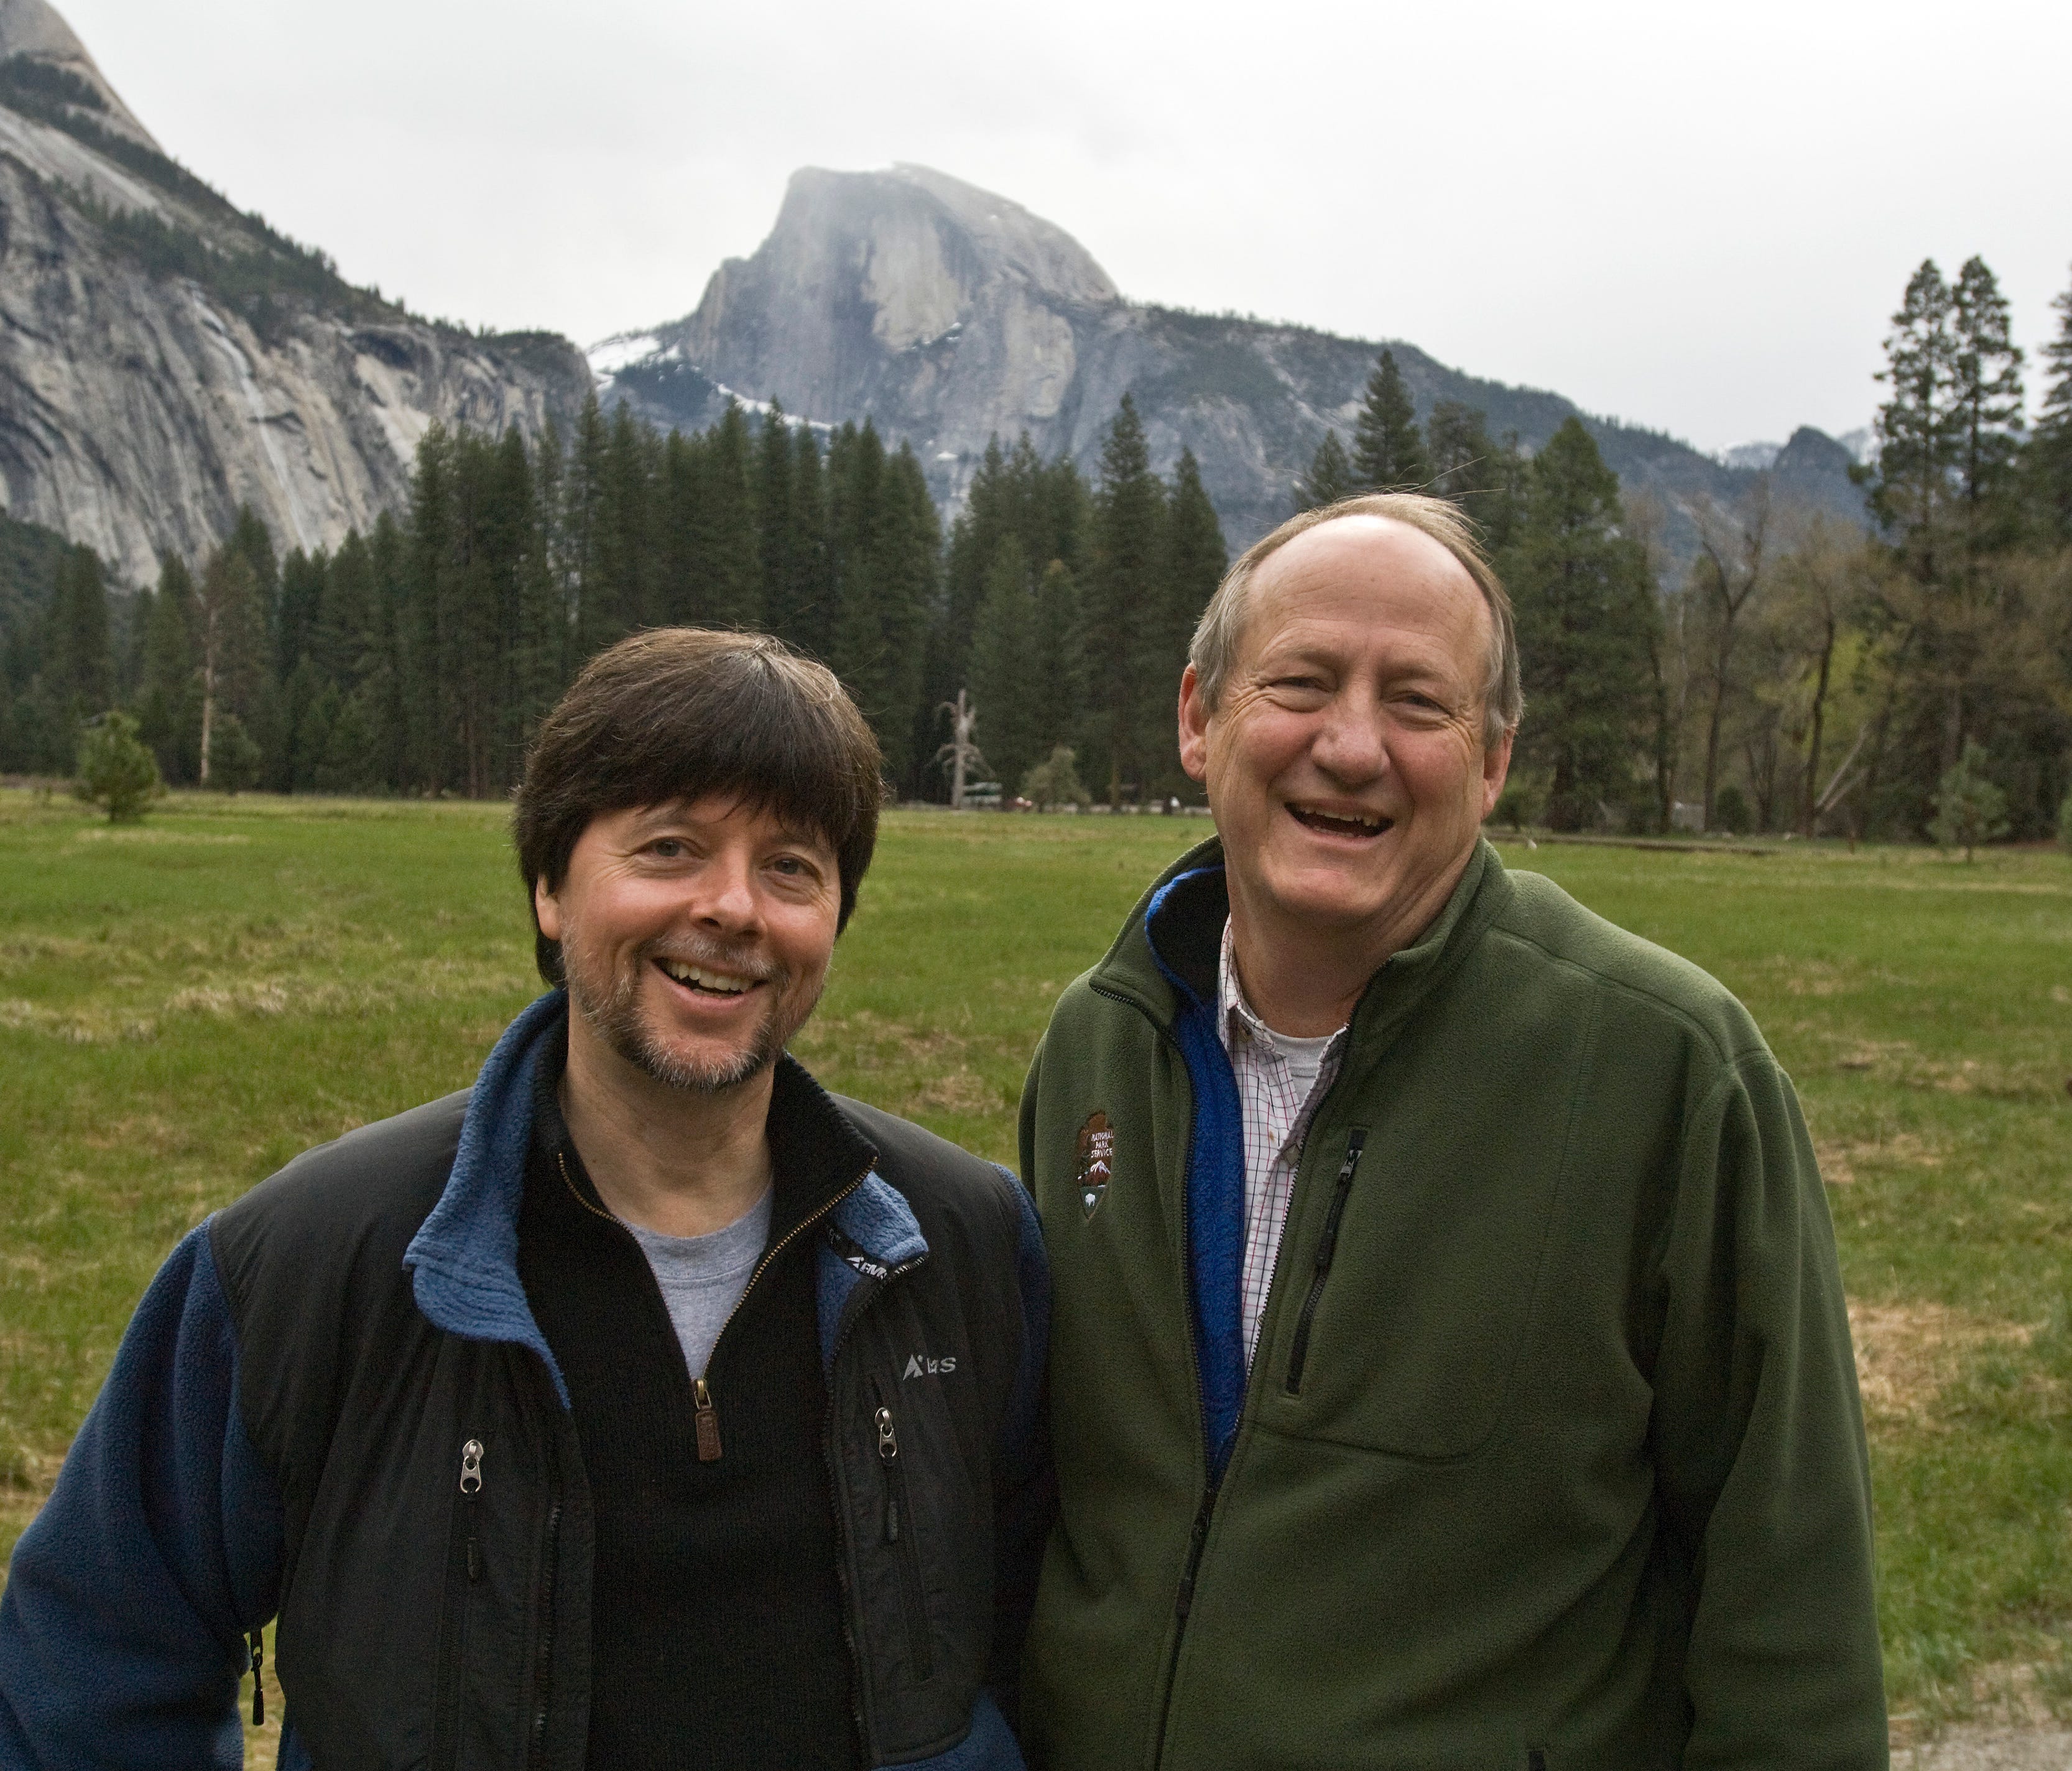 Filmmaker Ken Burns and Co-producer Dayton Duncan visit Yosemite National Park on April 24, 2009.